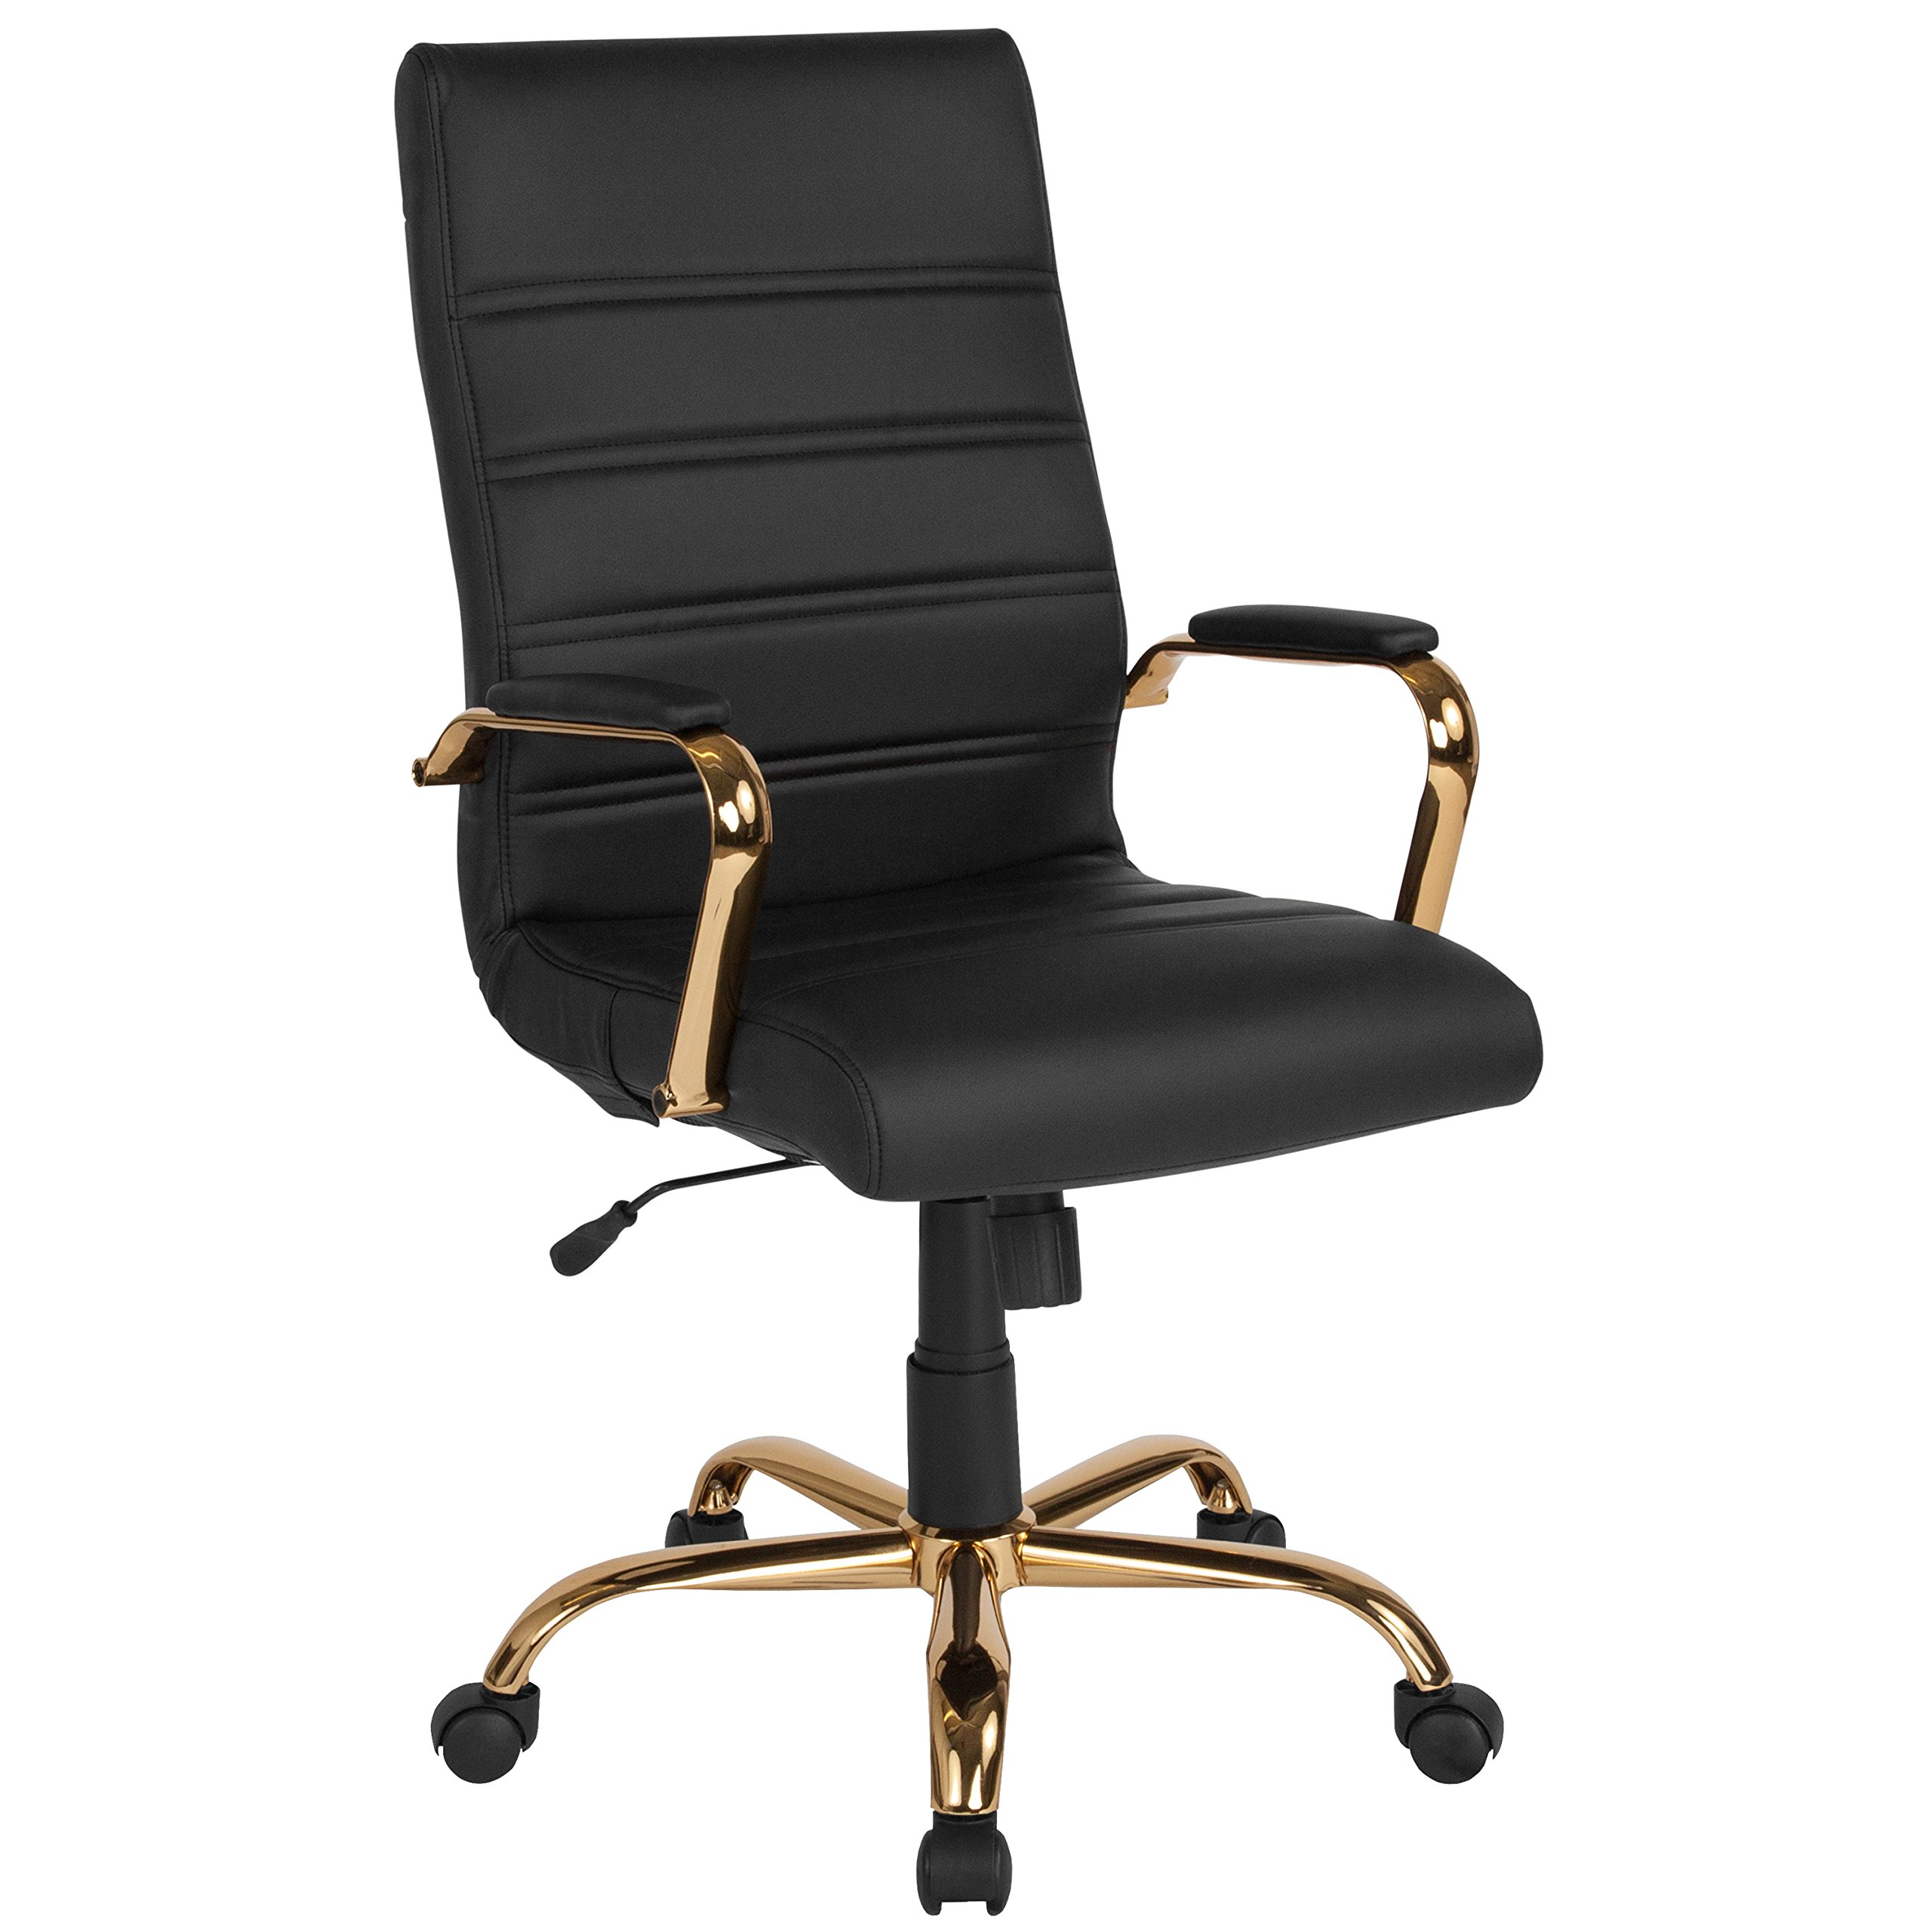  Flash Furniture Стул для рабочего стола с высокой спинкой - Черный кожаный мягкий офисный стул для руководителей с...